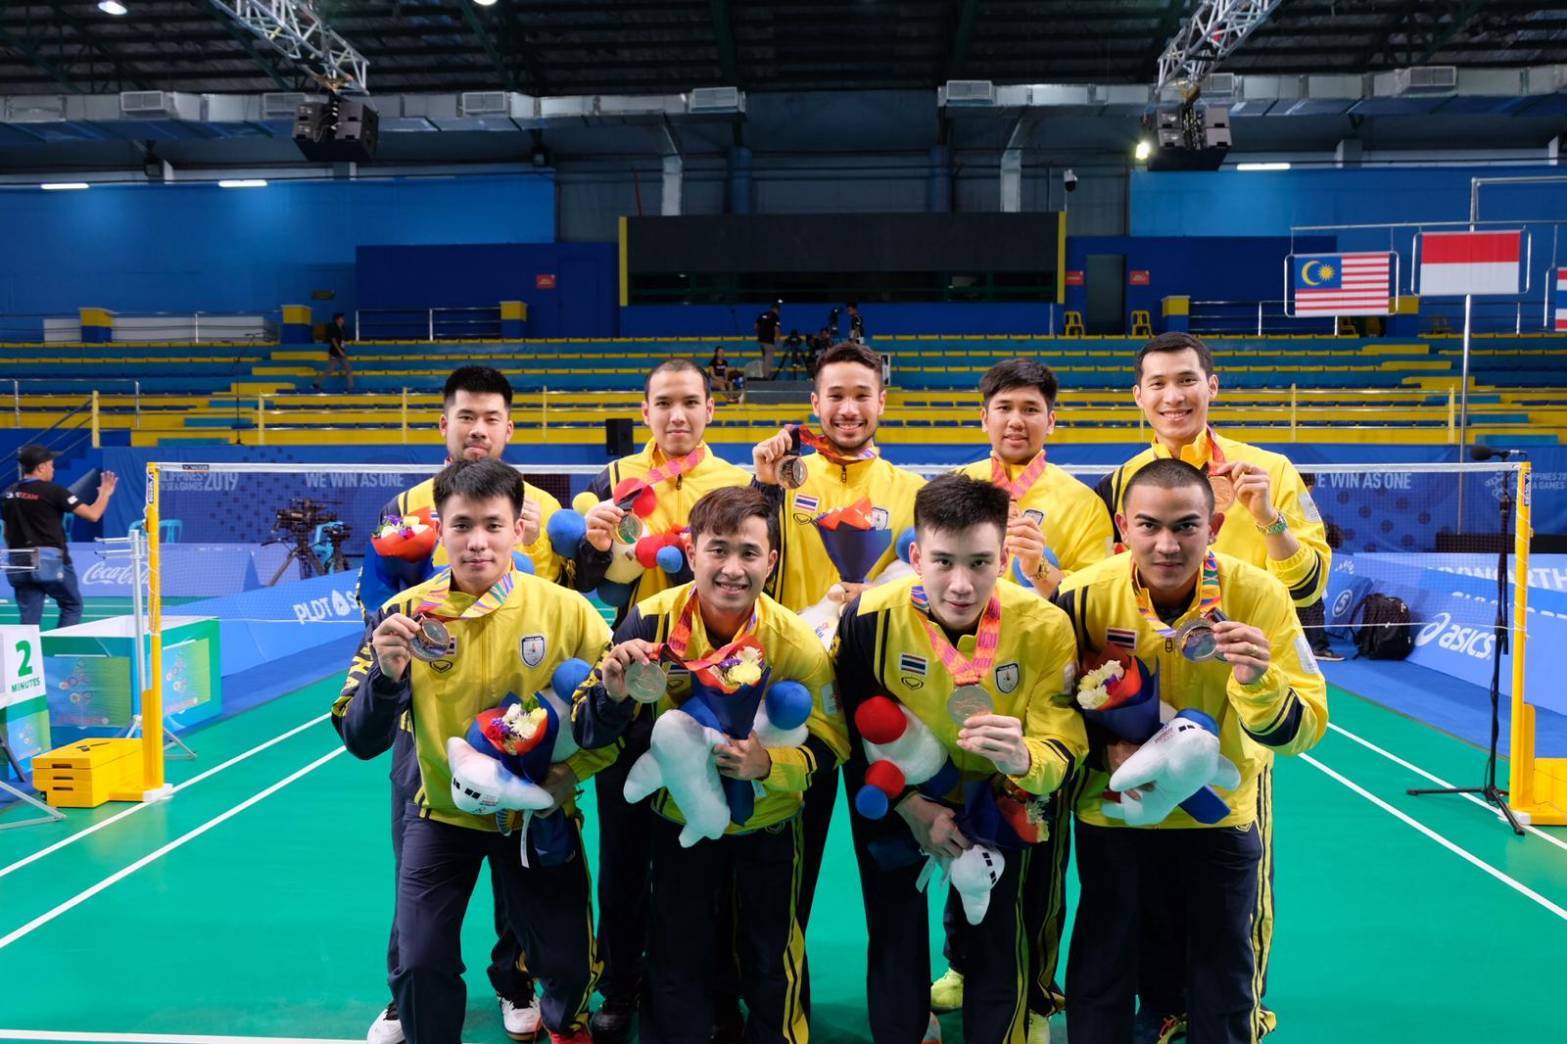 ทีมตบลูกขนไก่ชายไทย รับเหรียญทองแดง ในการแข่งขันแบดมินตัน กีฬาซีเกมส์ ครั้งที่ 30